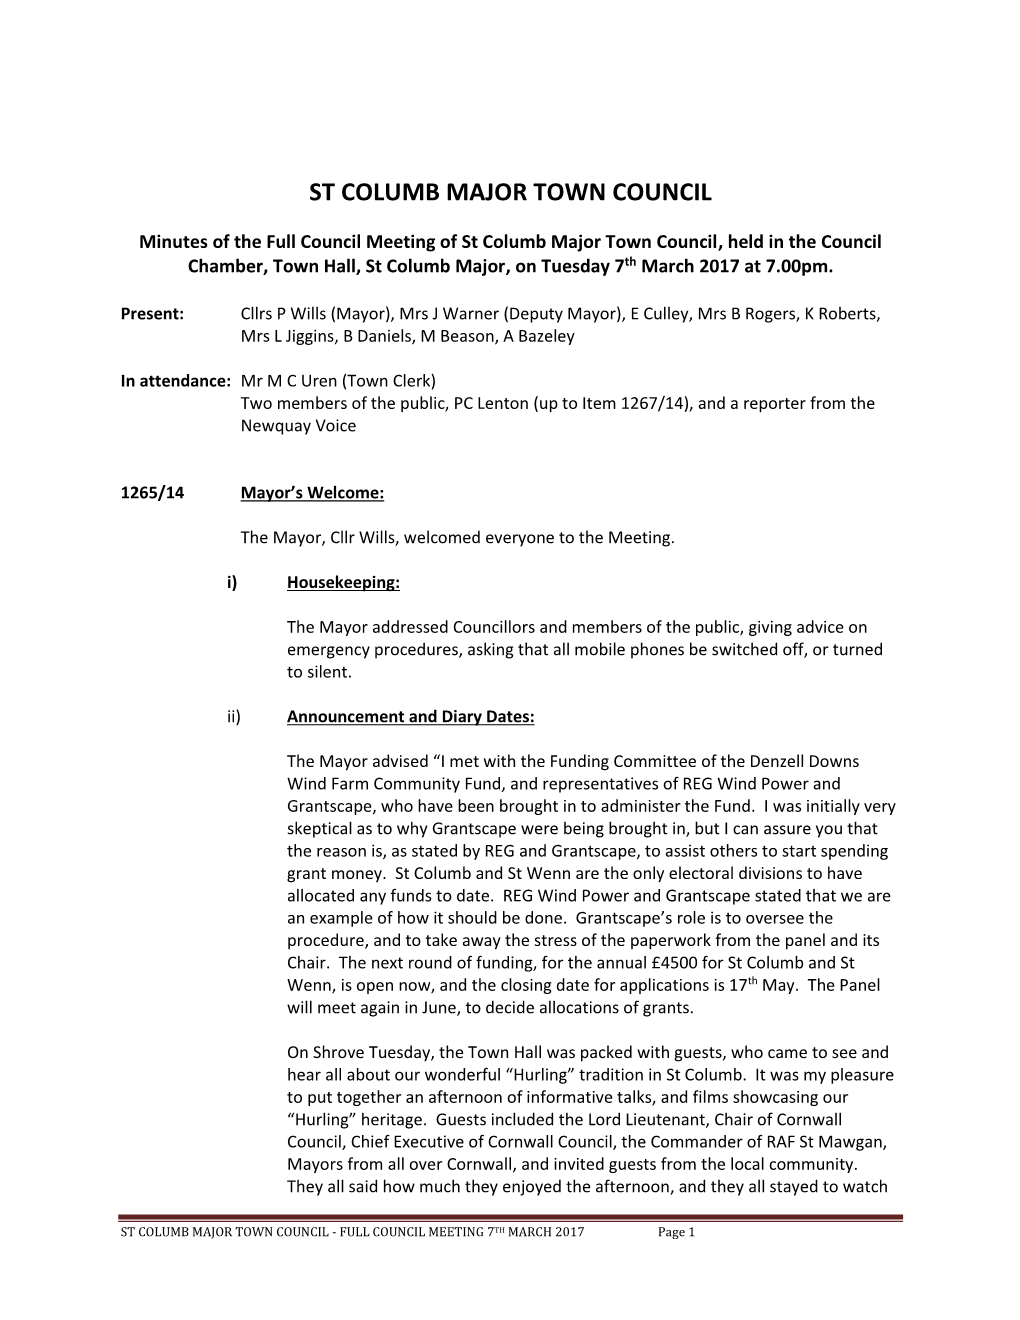 St Columb Major Town Council